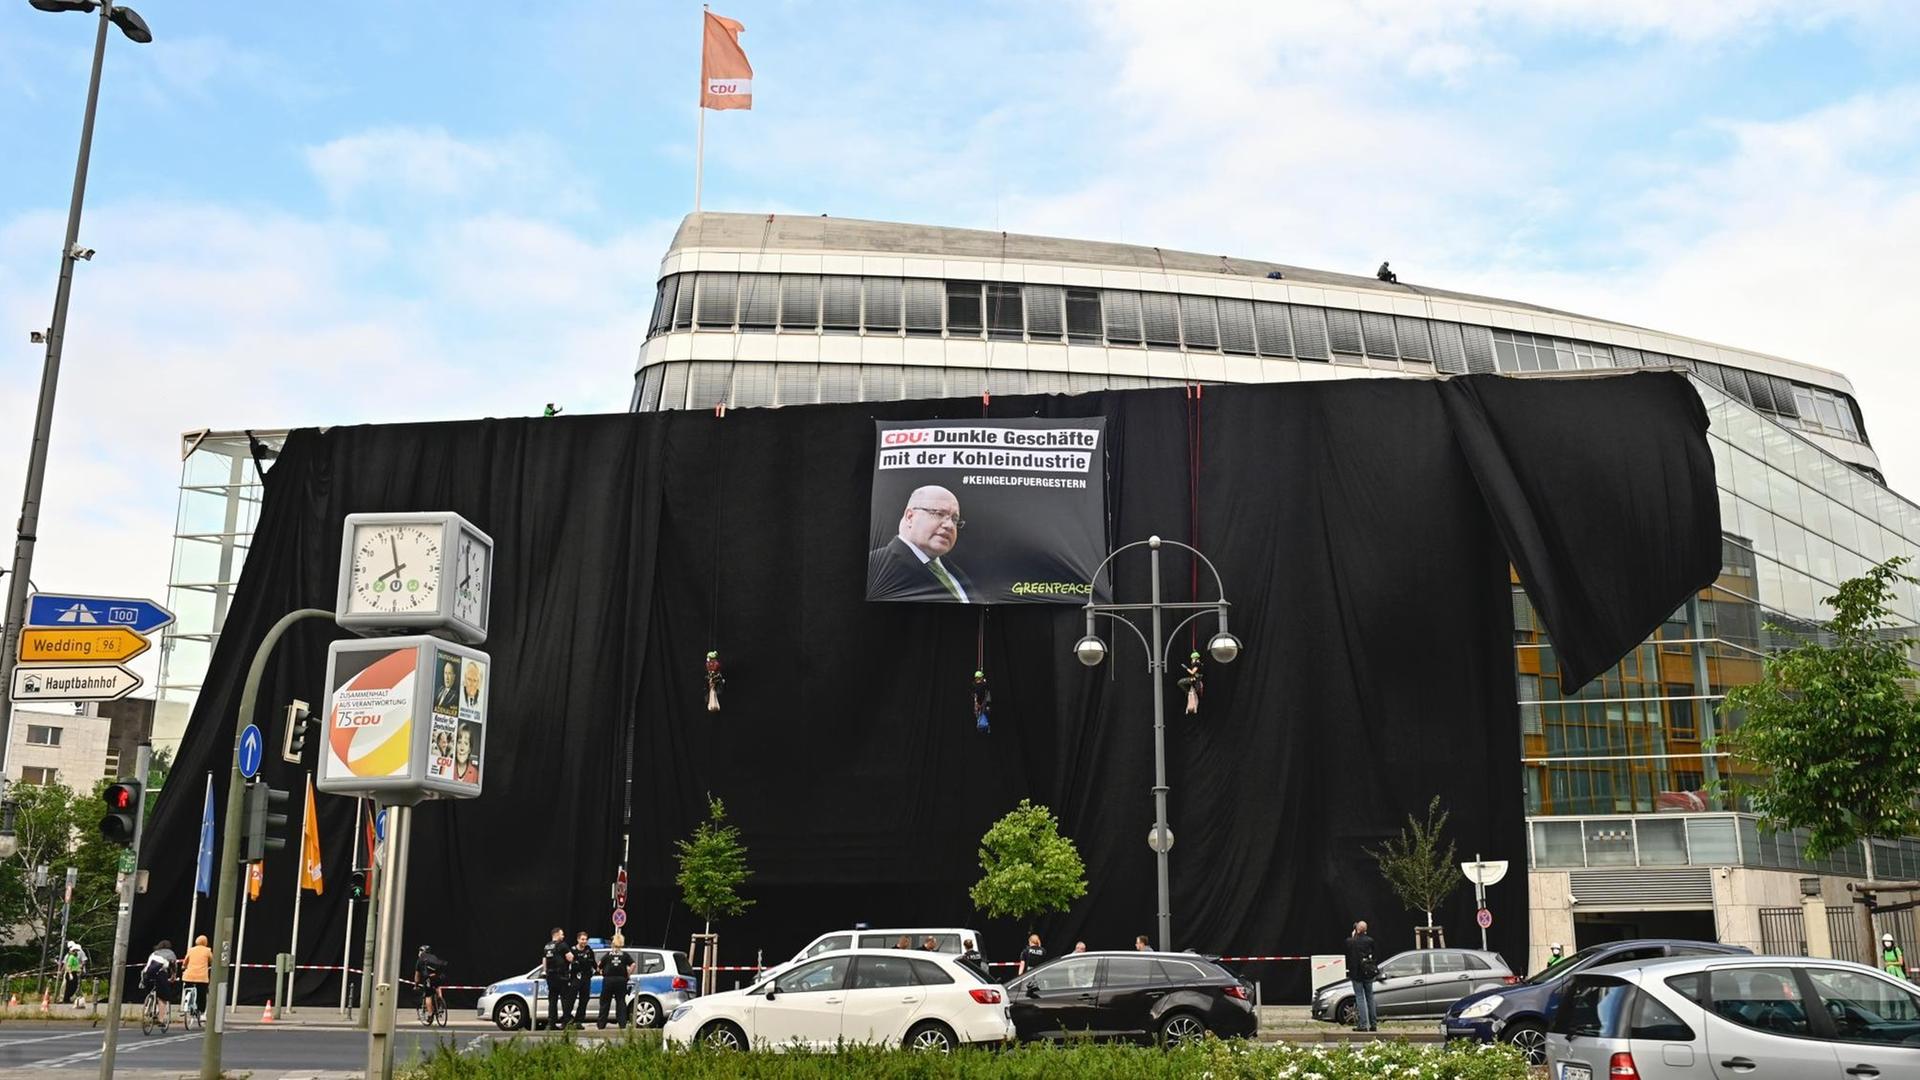 Die CDU-Zentrale ist mit schwarzen Tüchern verhängt und einem Plakat, auf dem steht: "Dunkle Geschäfte mit der Kohleindustrie".